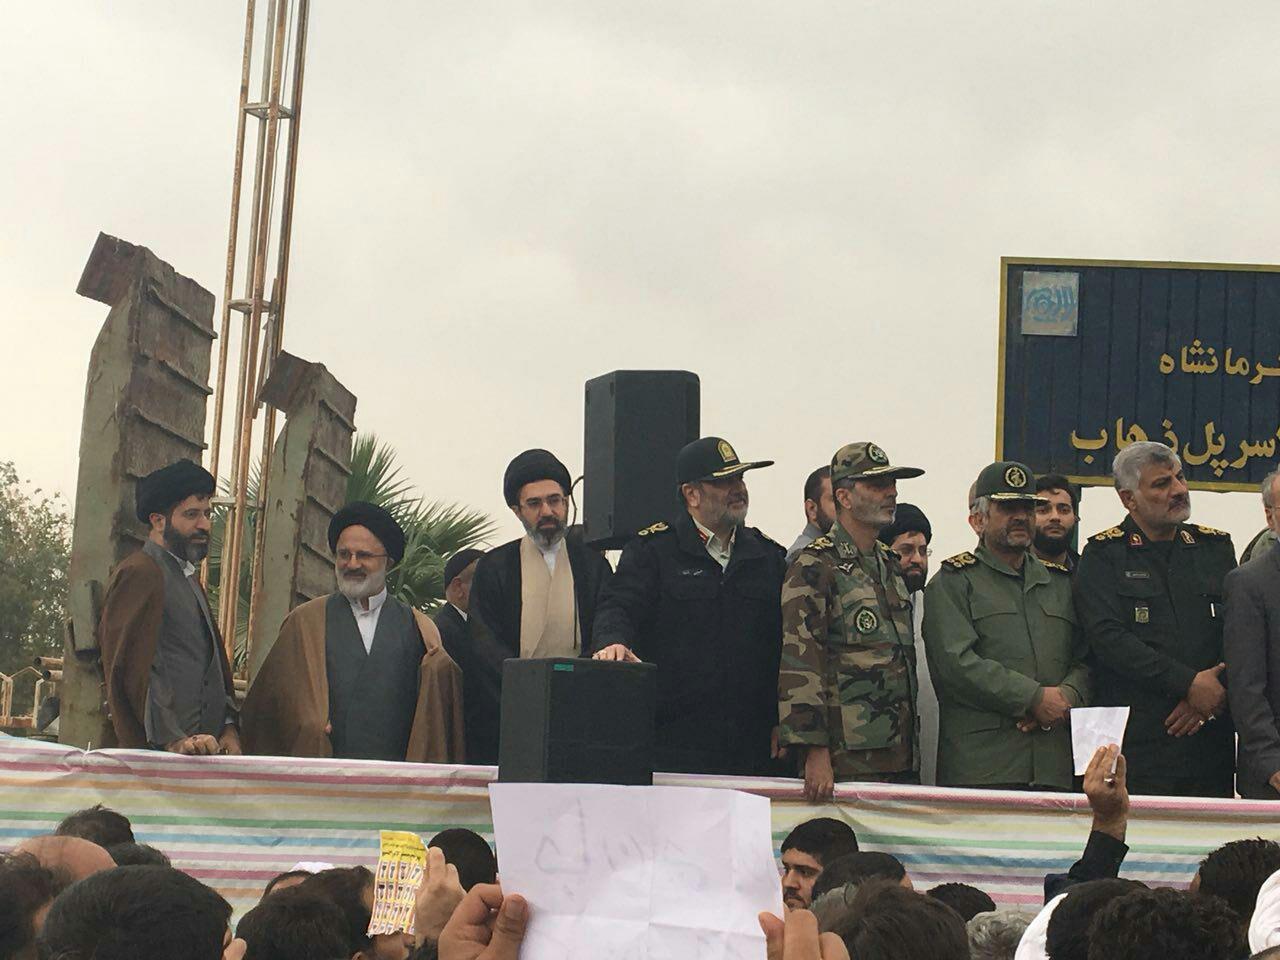  فرزاندان رهبر انقلاب اسلامی در حاشیه بازدید از مناطق زلزله زده+عکس